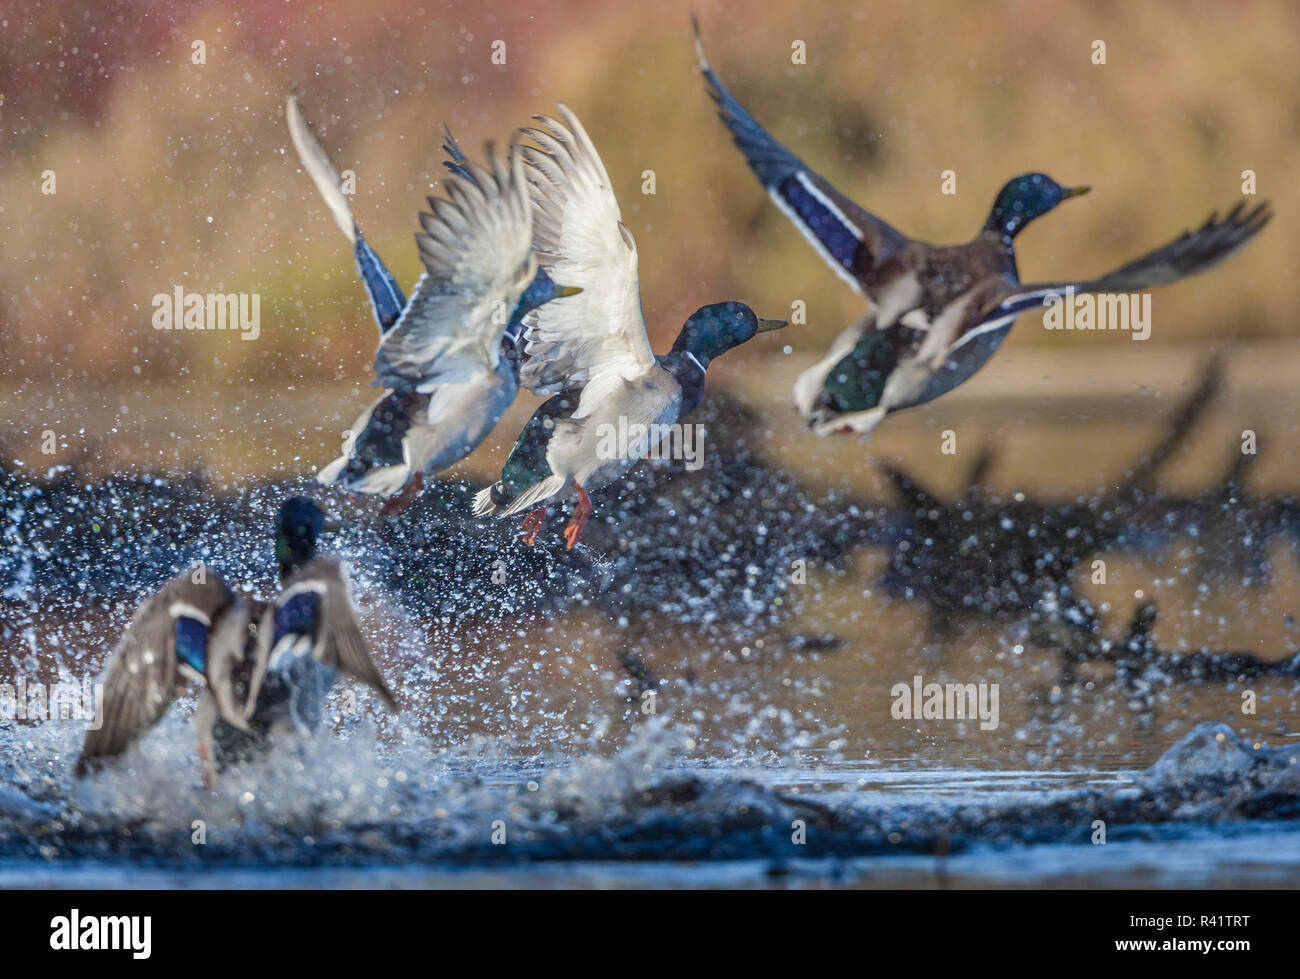 USA, Washington State. Herde (männlicher) Stockenten (Anas platyrhynchos) Flug auf Union Bay in Seattle. Stockfoto